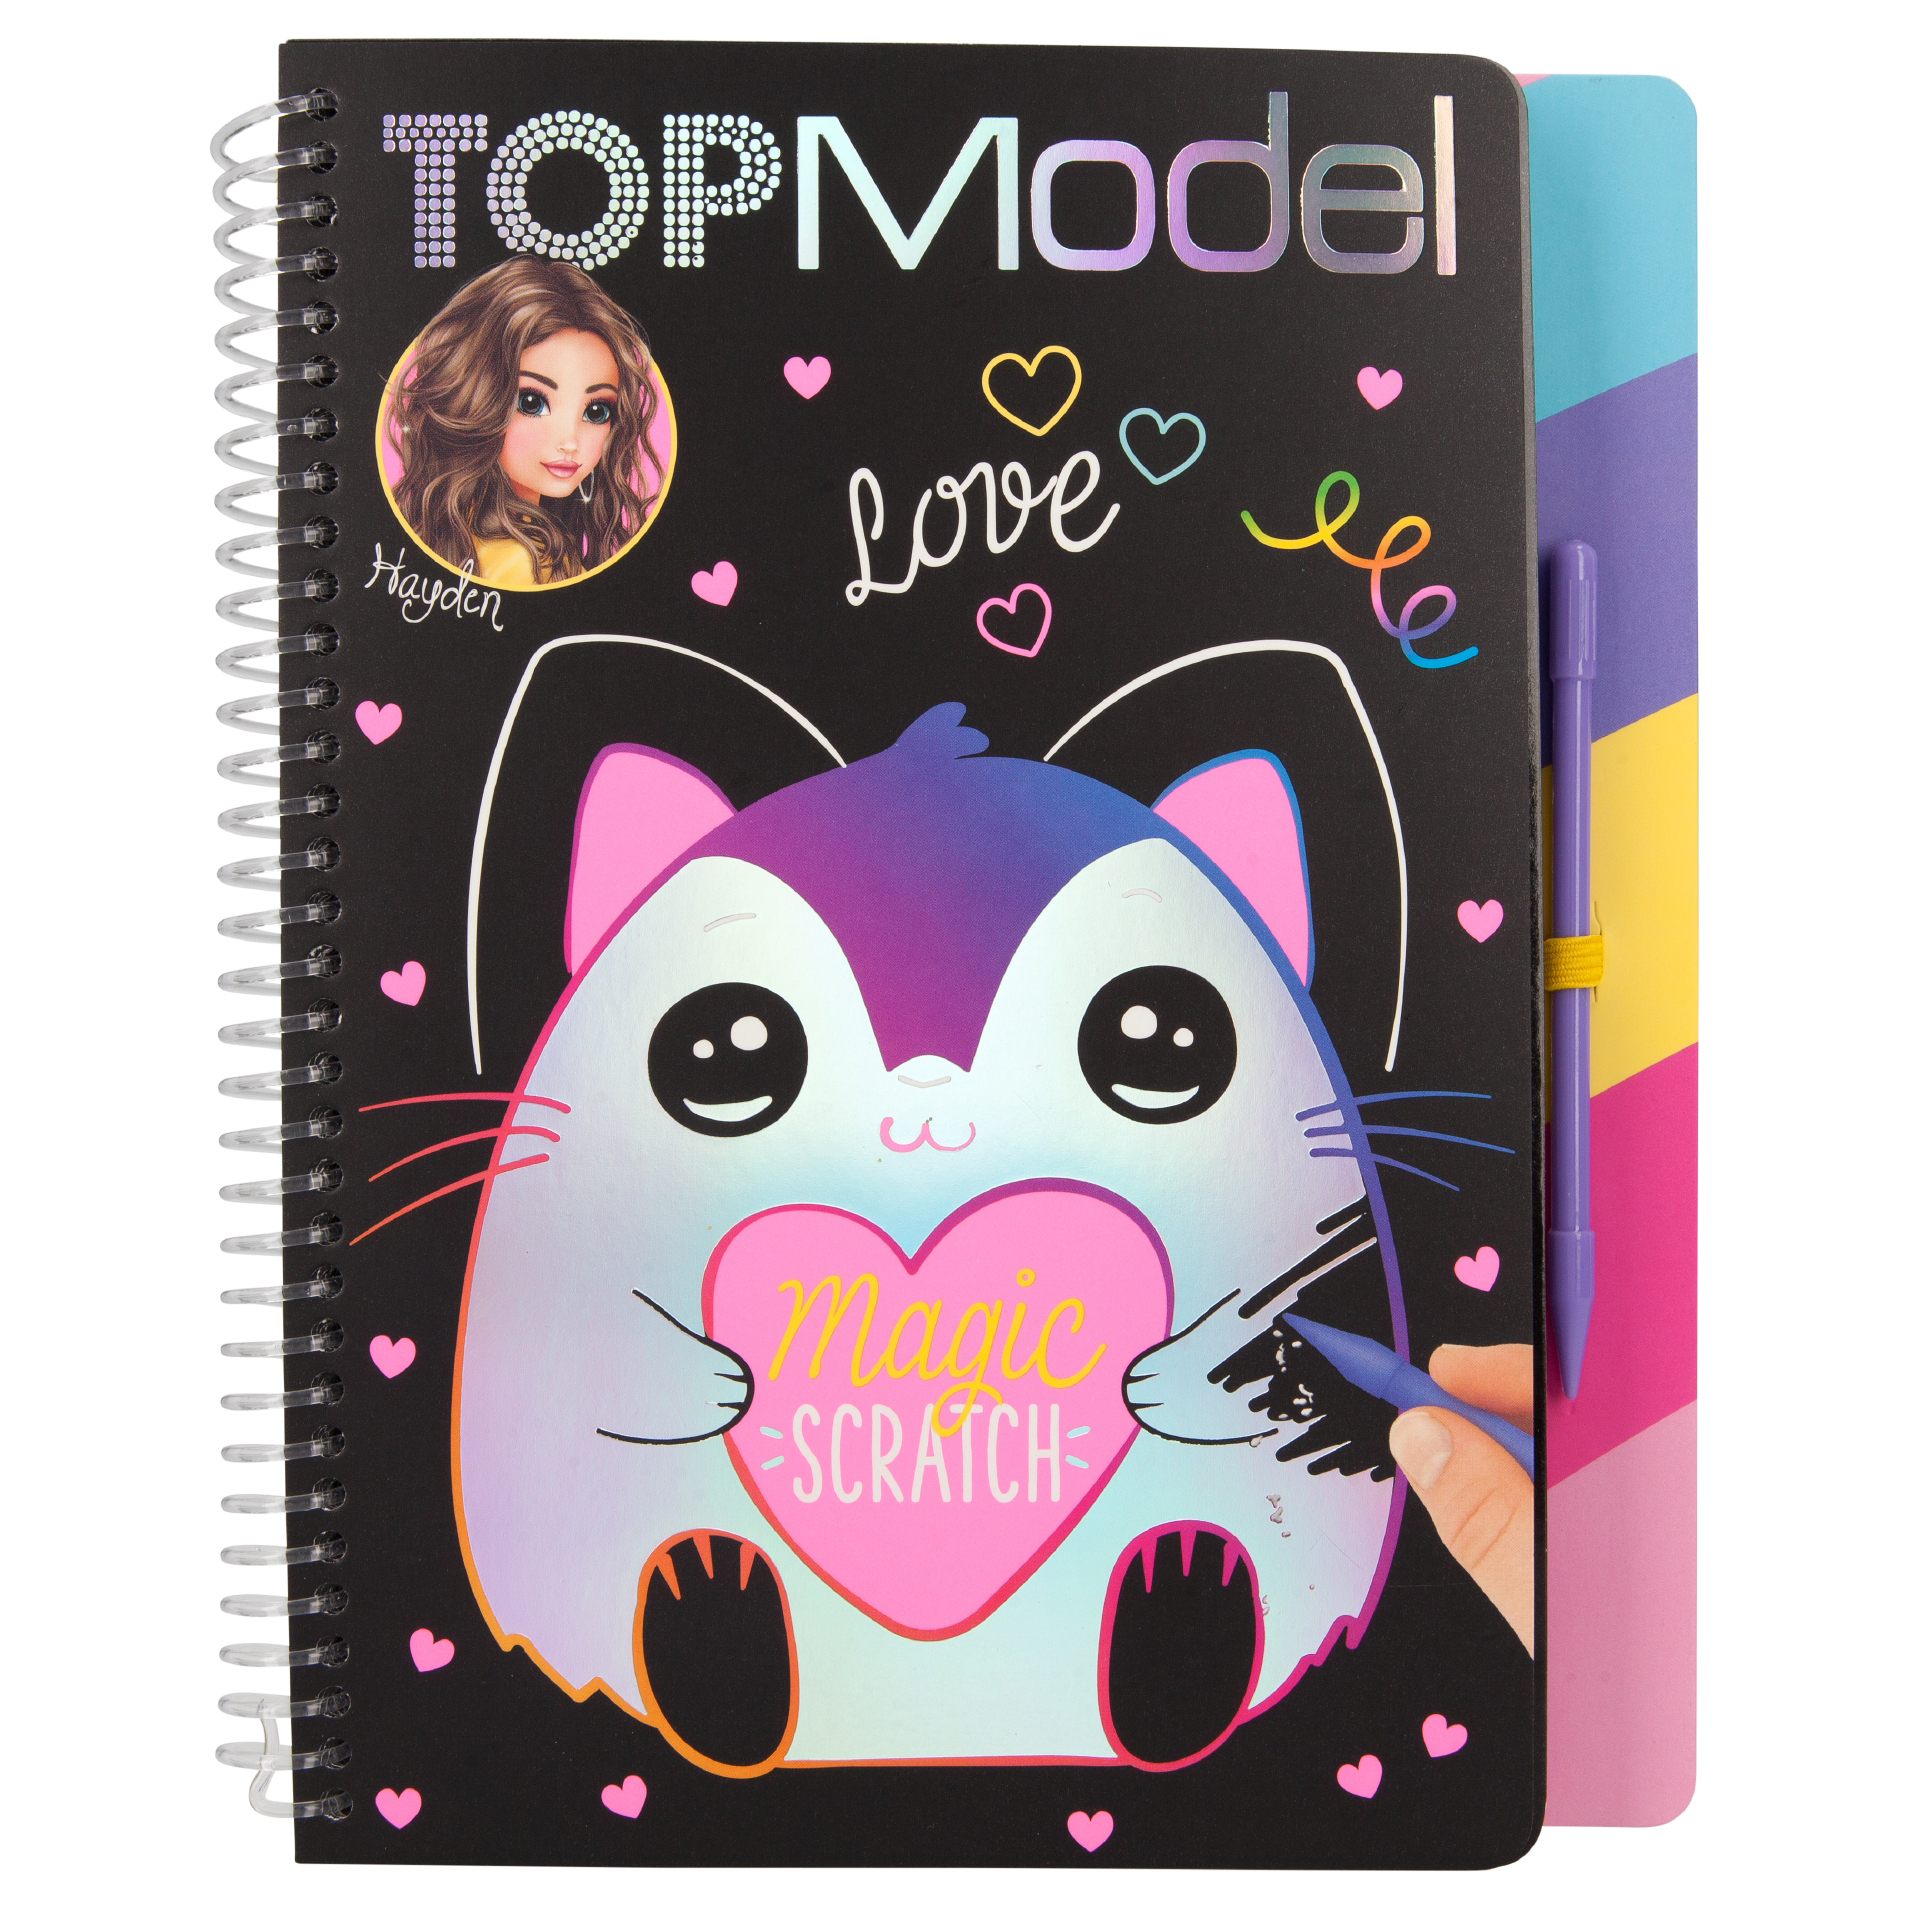 TOP Model Magic-Scratch Book